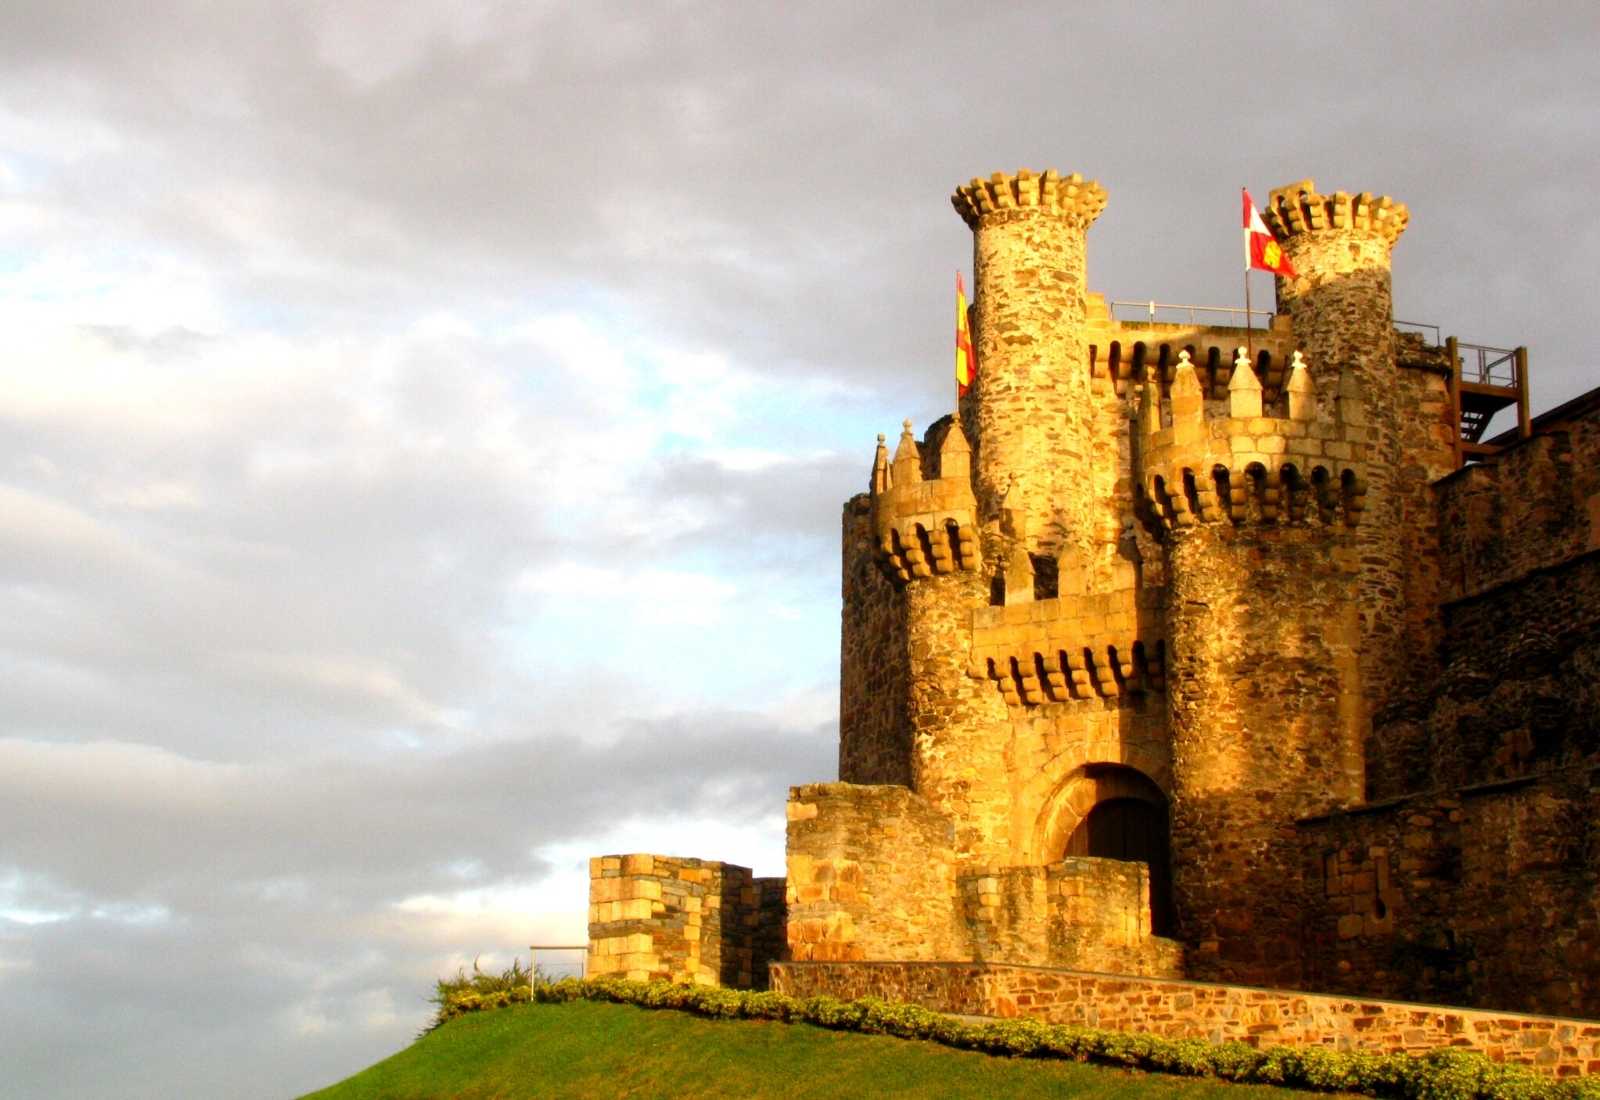 Castle in the Camino de Santiago